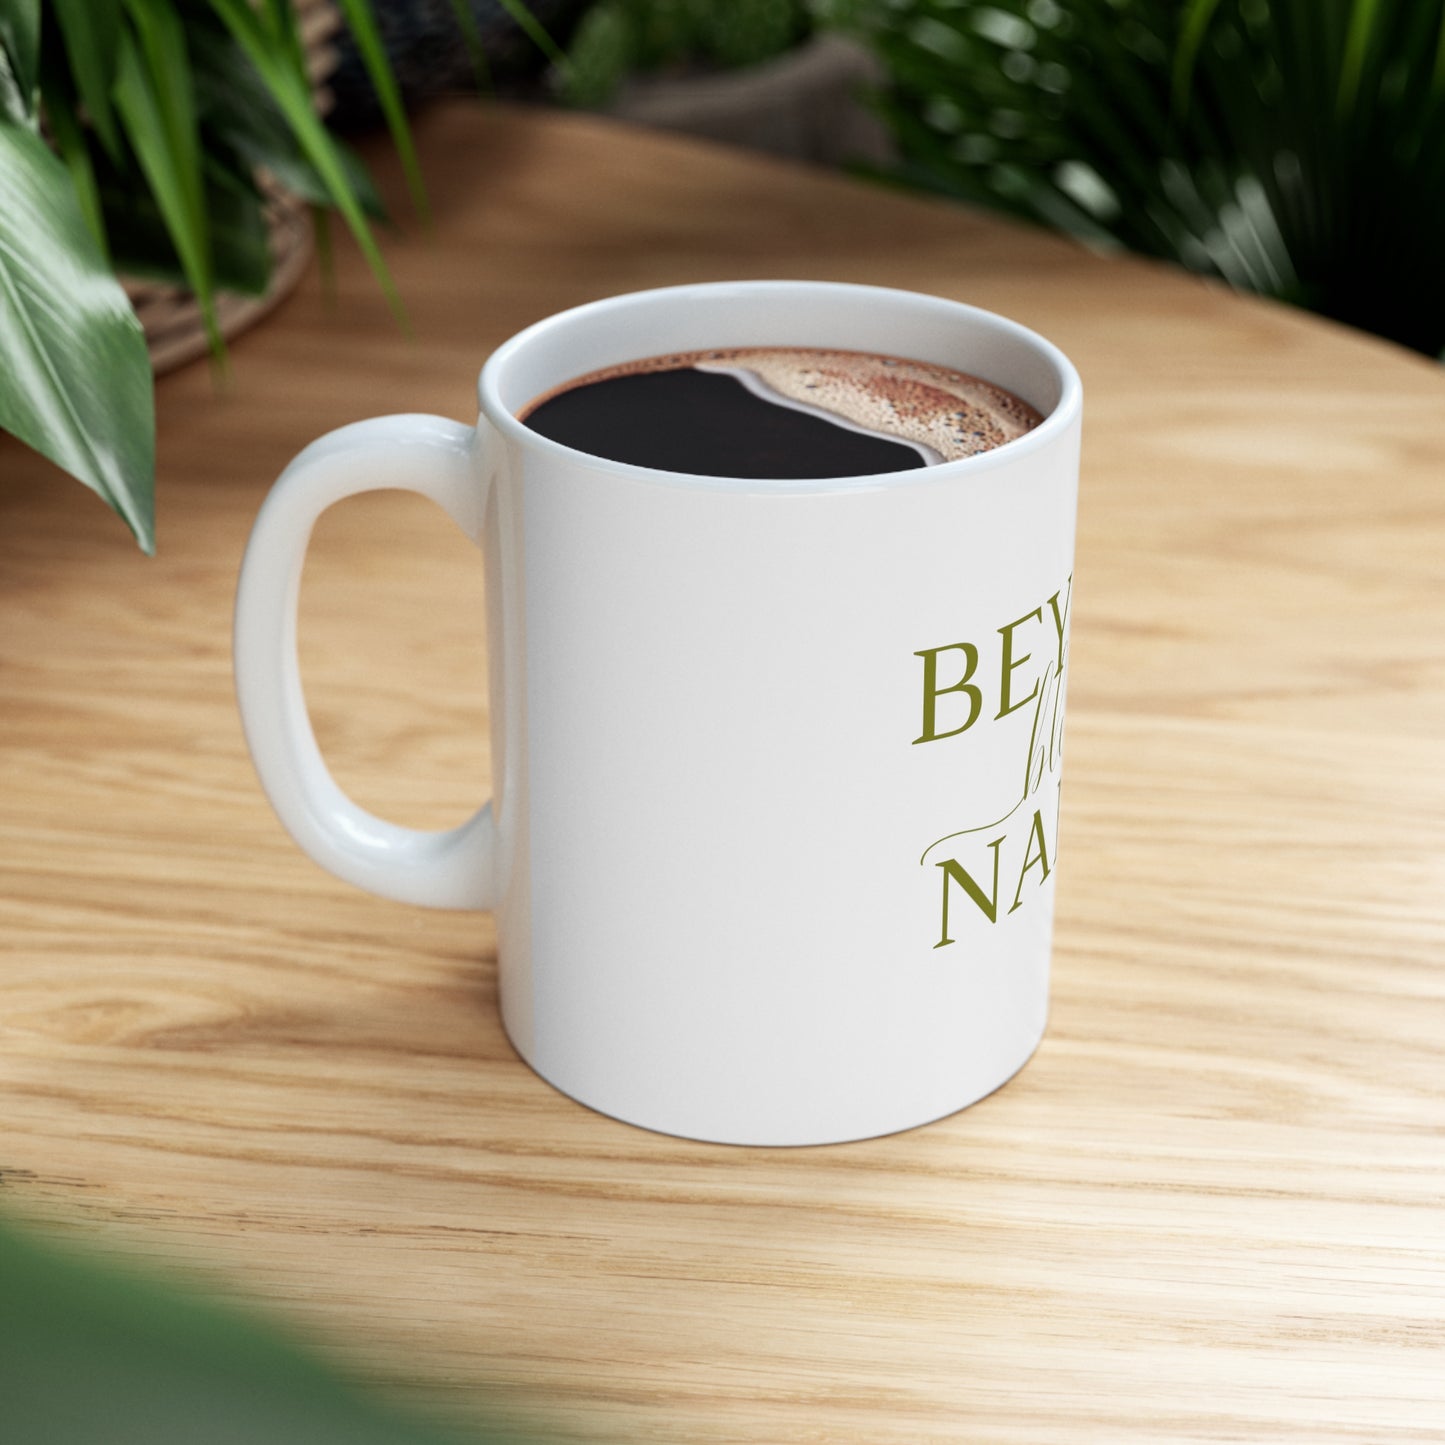 Beyond Blessed Nanny - Plain Ceramic Mug 11oz